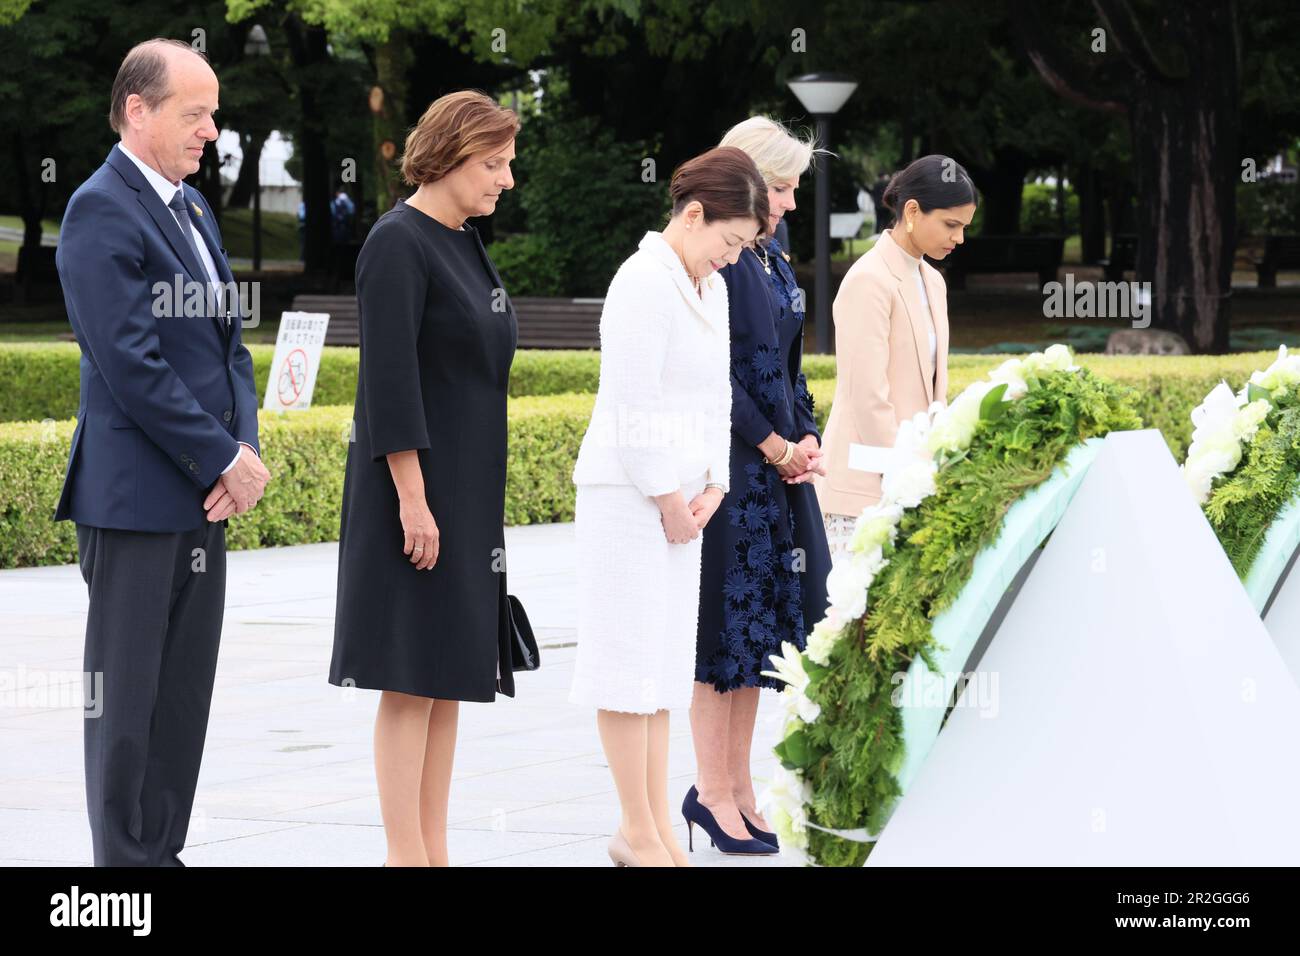 Hiroshima, Japon. 19th mai 2023. Le Groupe des sept conjoints se dresse un moment de silence après avoir déposé des couronnes au Cenotaph commémoratif du Parc commémoratif de la paix d'Hiroshima, le premier jour du Sommet de G7, à 19 mai 2023, au Japon. Debout de gauche à droite : Akshata Narayan Murty, du Royaume-Uni, la première dame des États-Unis, Jill Biden, Yuko Kishida, du Japon, Britta Ernst, d'Allemagne, et Heiko von der Leyen, épouse du président de l'Union européenne. Crédit: Photo de piscine/G7 Hiroshima/Alamy Live News Banque D'Images